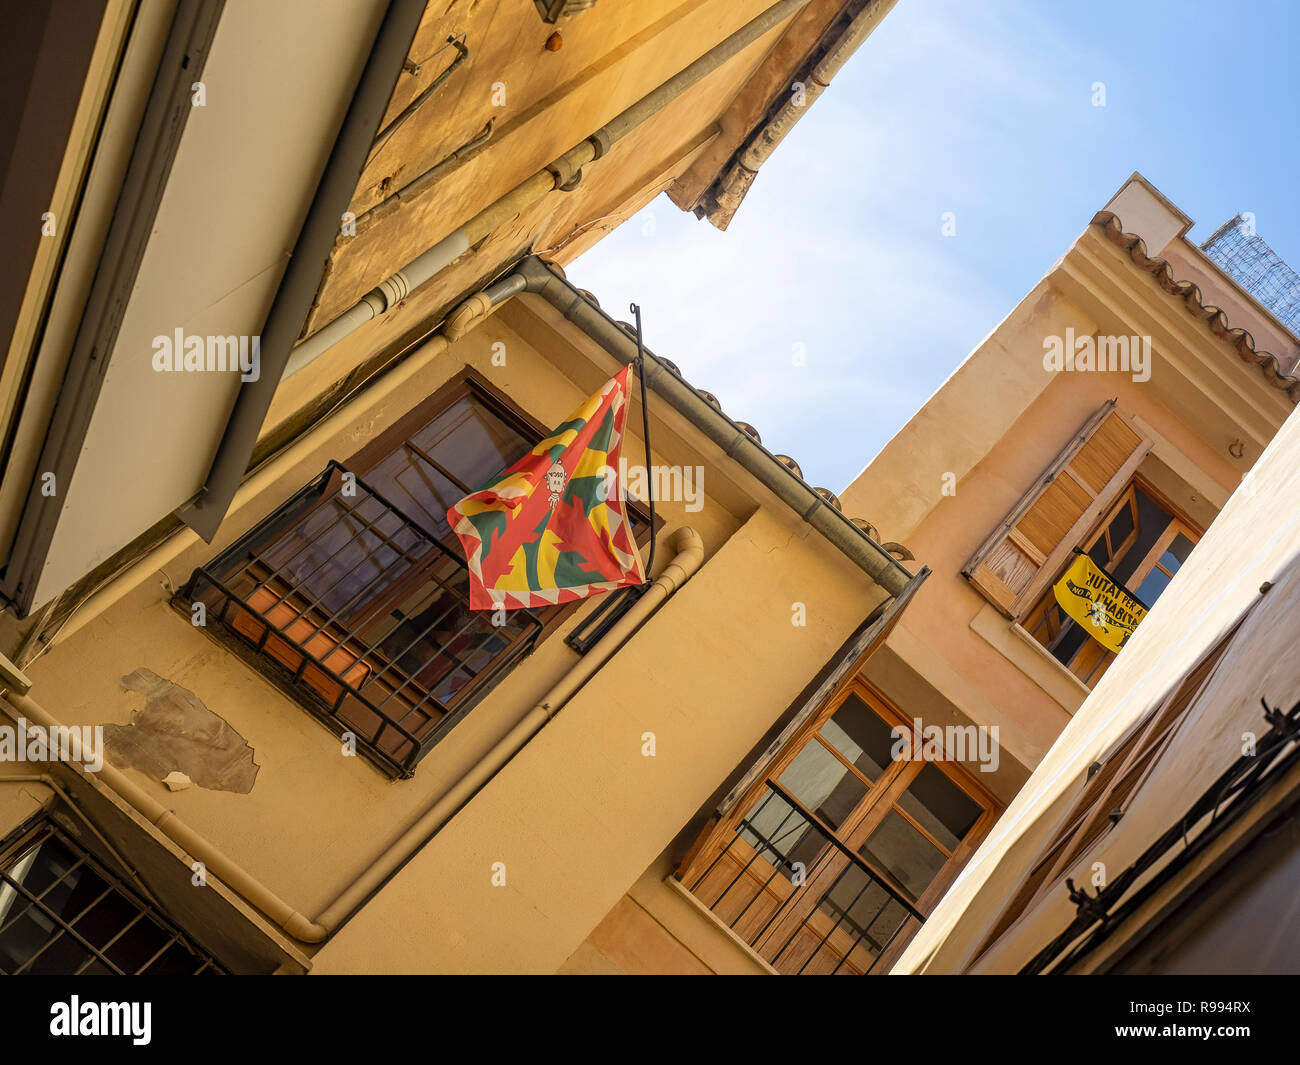 PALMA DE MAJORQUE, ESPAGNE - 23 MAI 2018 : drapeau de Huesca à l'extérieur de l'immeuble d'appartements Banque D'Images